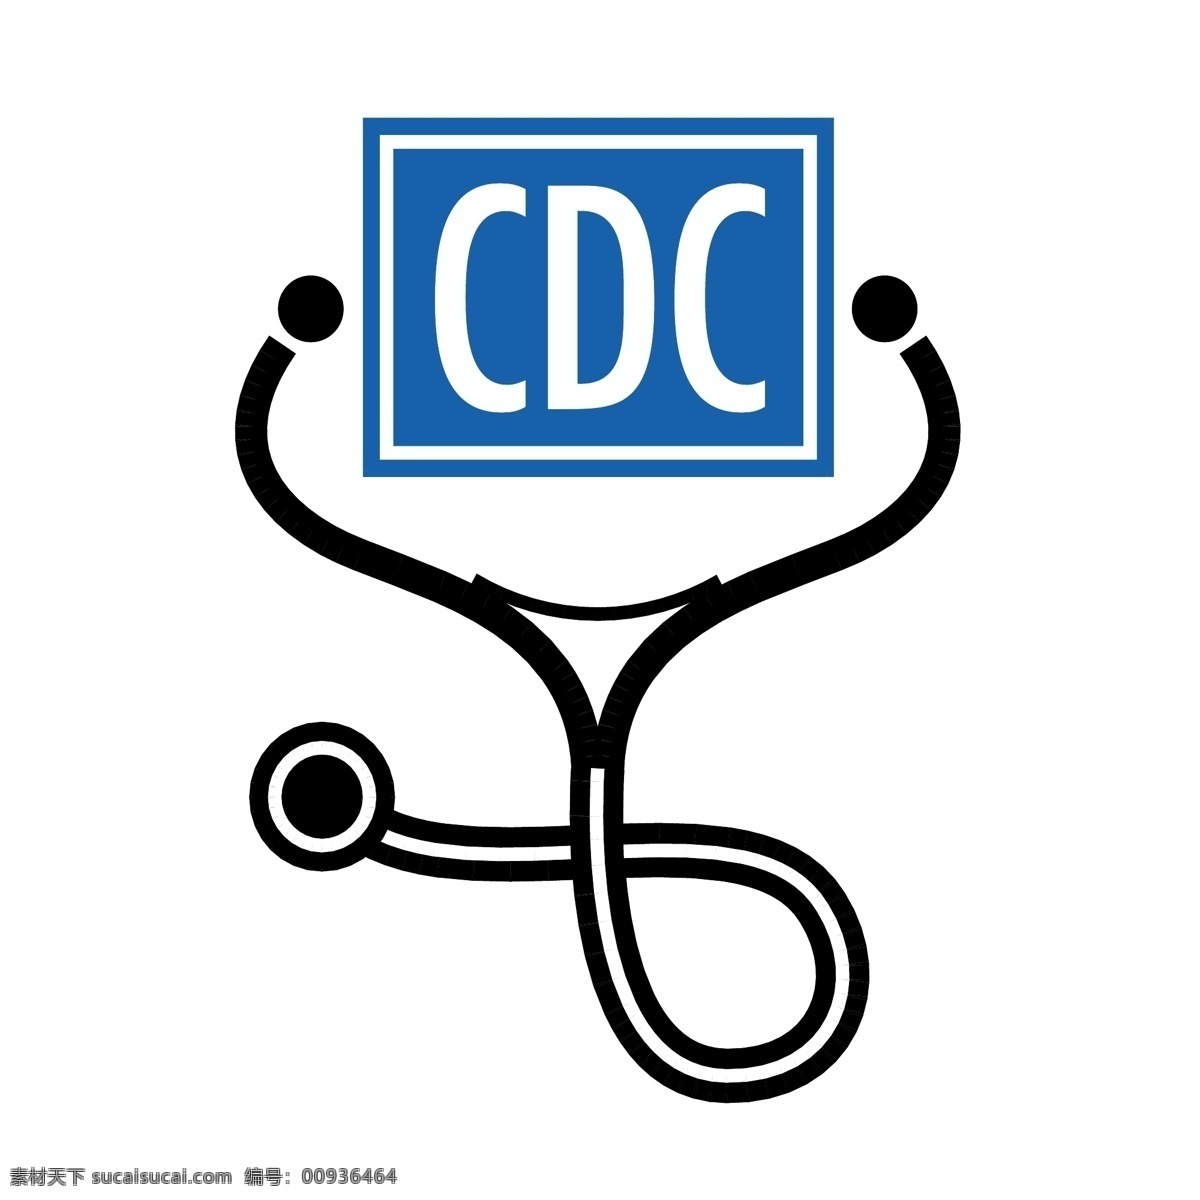 疾病预防 控制 中心 中心标志 cdc 标志 矢量 矢量cdc 疾控 向量 标识 矢量图 建筑家居